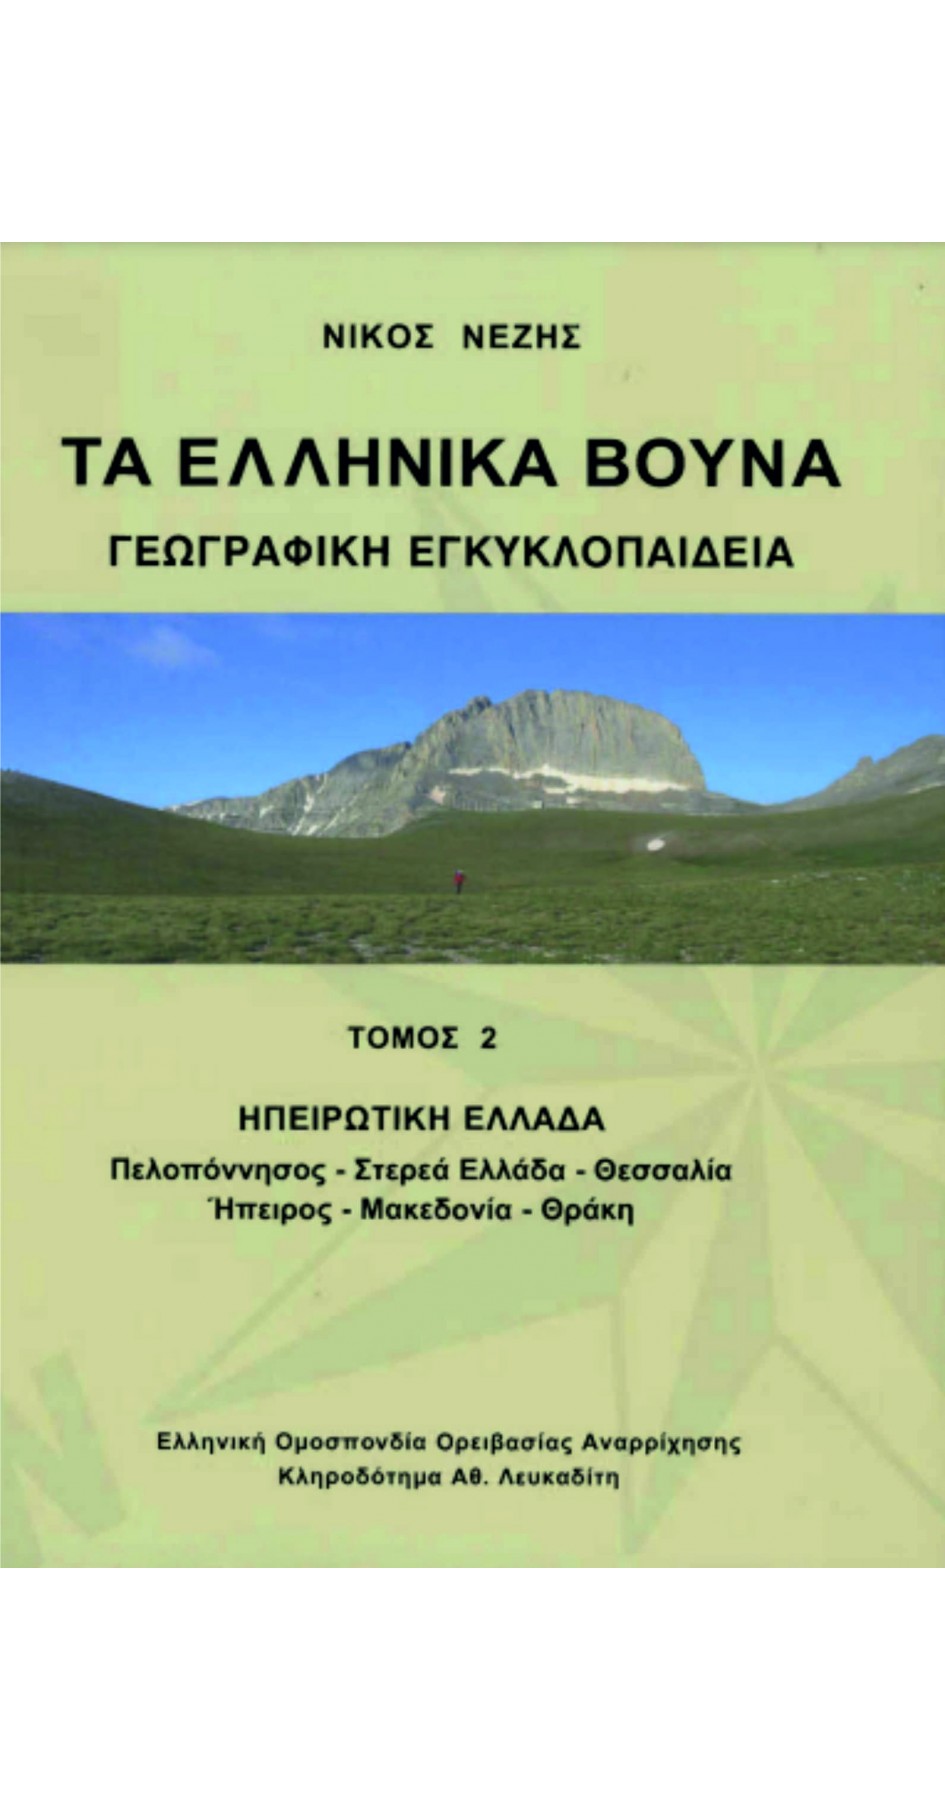 Τα Ελληνικά Βουνά (3τόμο) (book in Greek)